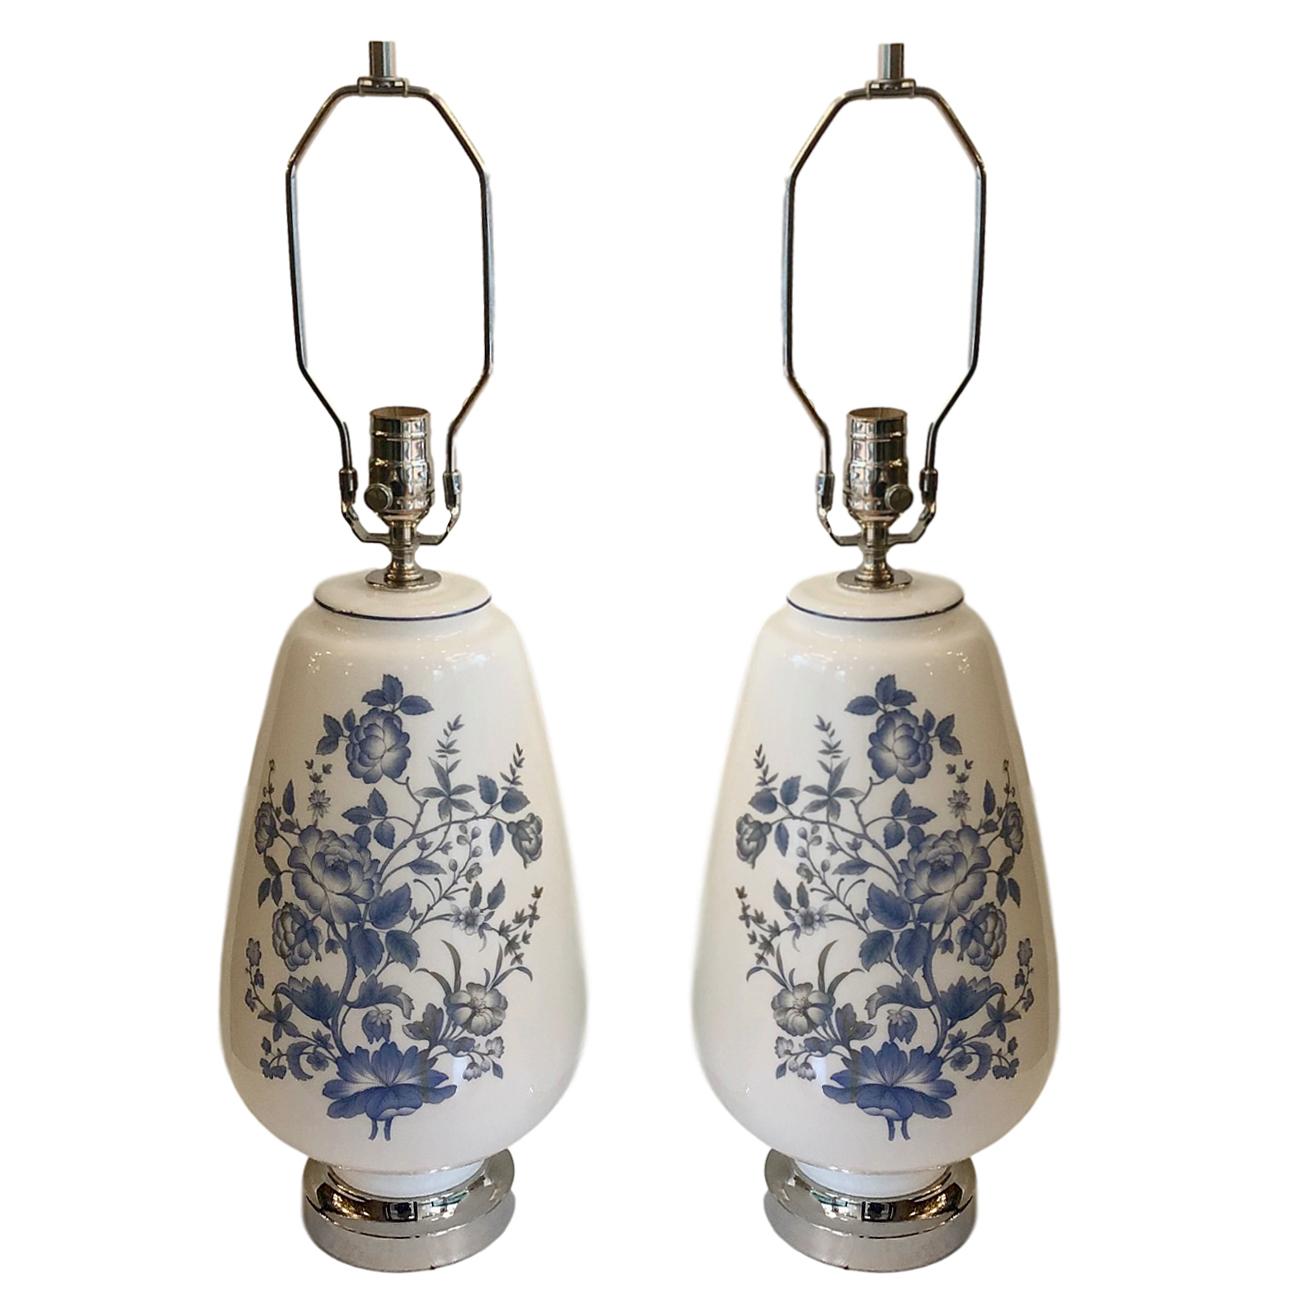 Une paire de grandes lampes françaises en verre opalin blanc des années 1940 avec une décoration florale bleue.

Mesures :
Hauteur du corps : 17
Hauteur de l'appui de l'abat-jour : 27